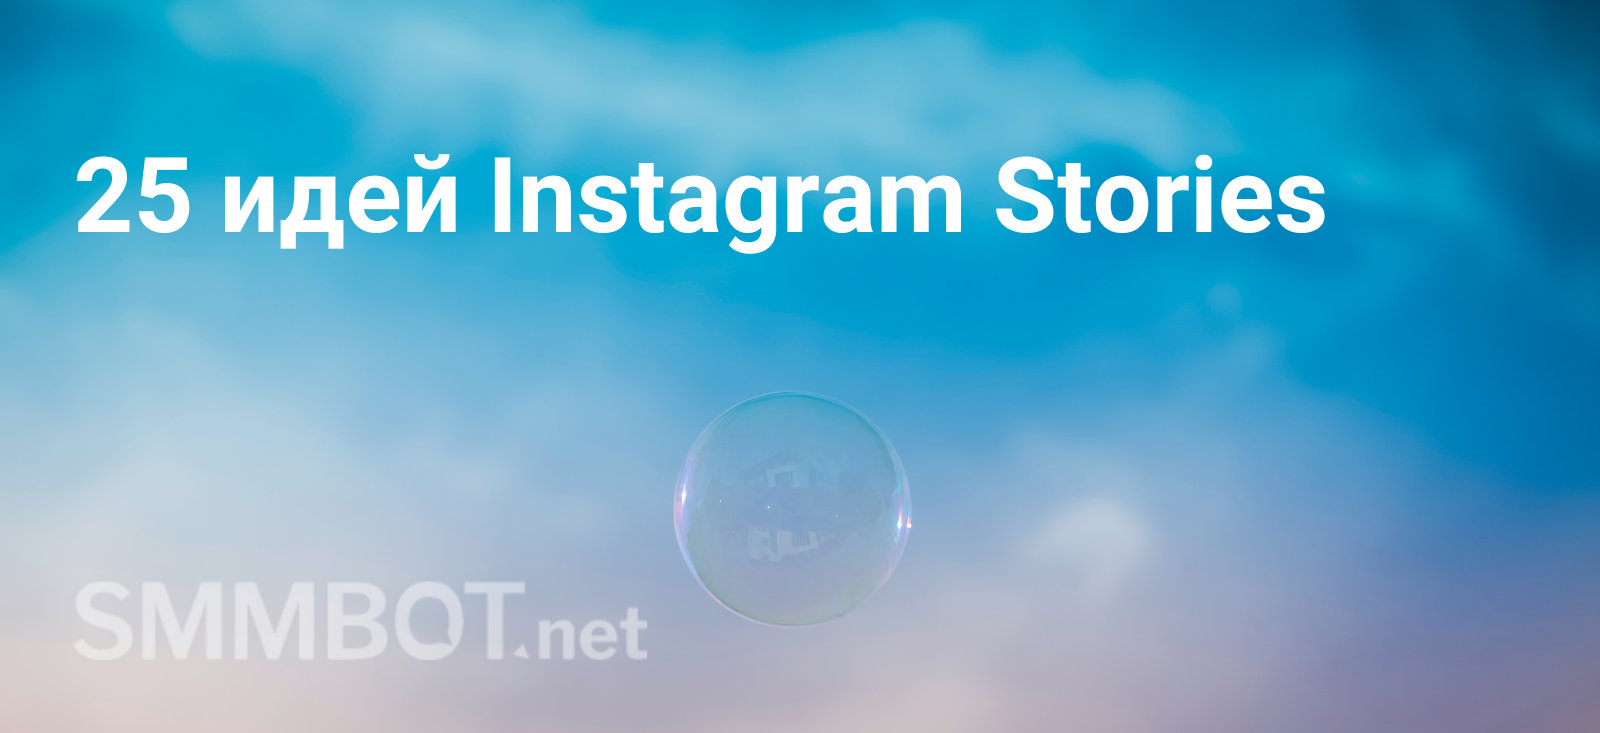 25 идей Instagram Stories для усиления стратегии продвижения